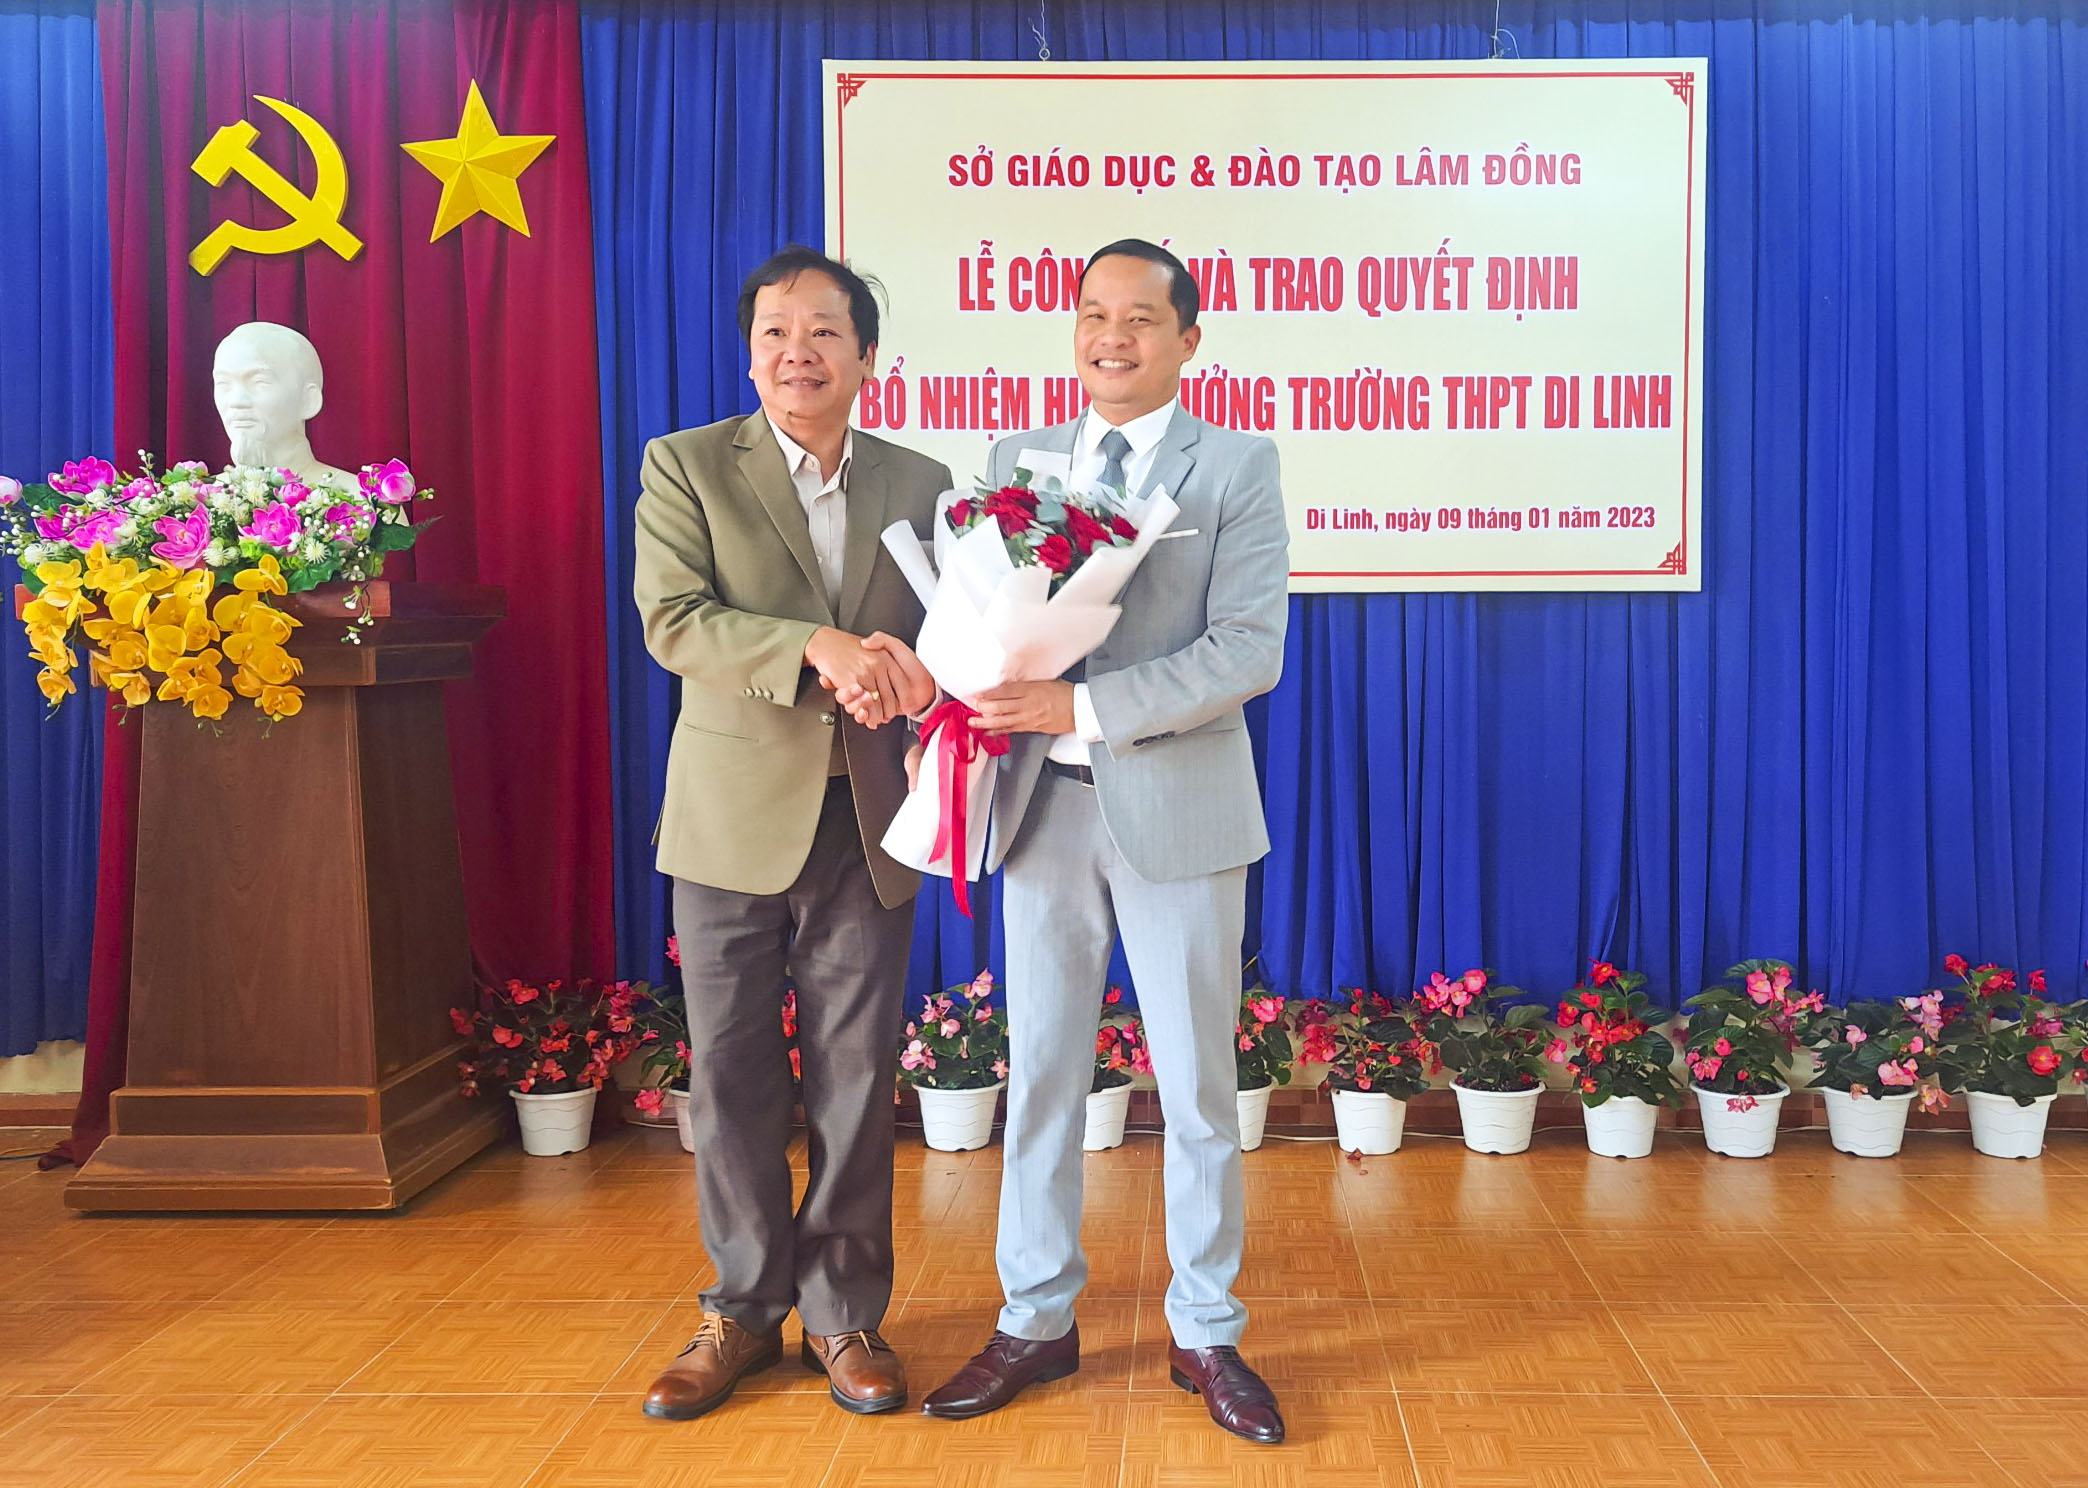 Hội nghị công bố Quyết định điều động và bổ nhiệm chức vụ Hiệu trưởng Trường THPT Di Linh